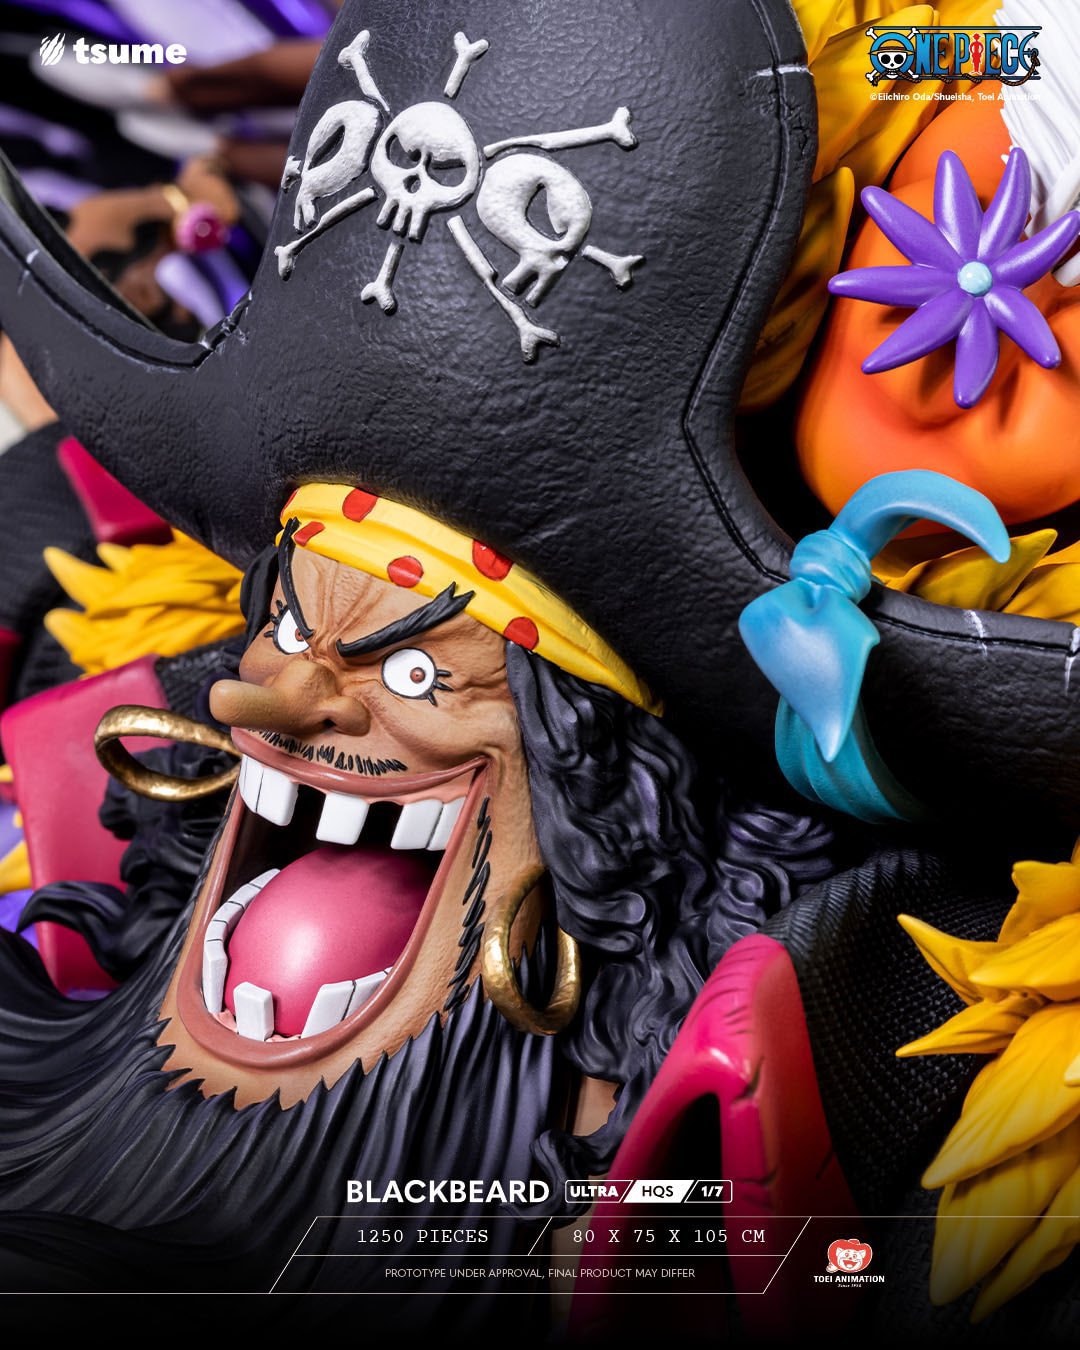 Mô hình Râu Đen chính là tản mạn cho các fan của Râu Đen. Được thiết kế với nhiều chi tiết và màu sắc tươi sáng, mô hình này sẽ làm hài lòng những người hâm mộ One Piece nói chung và Râu Đen nói riêng.